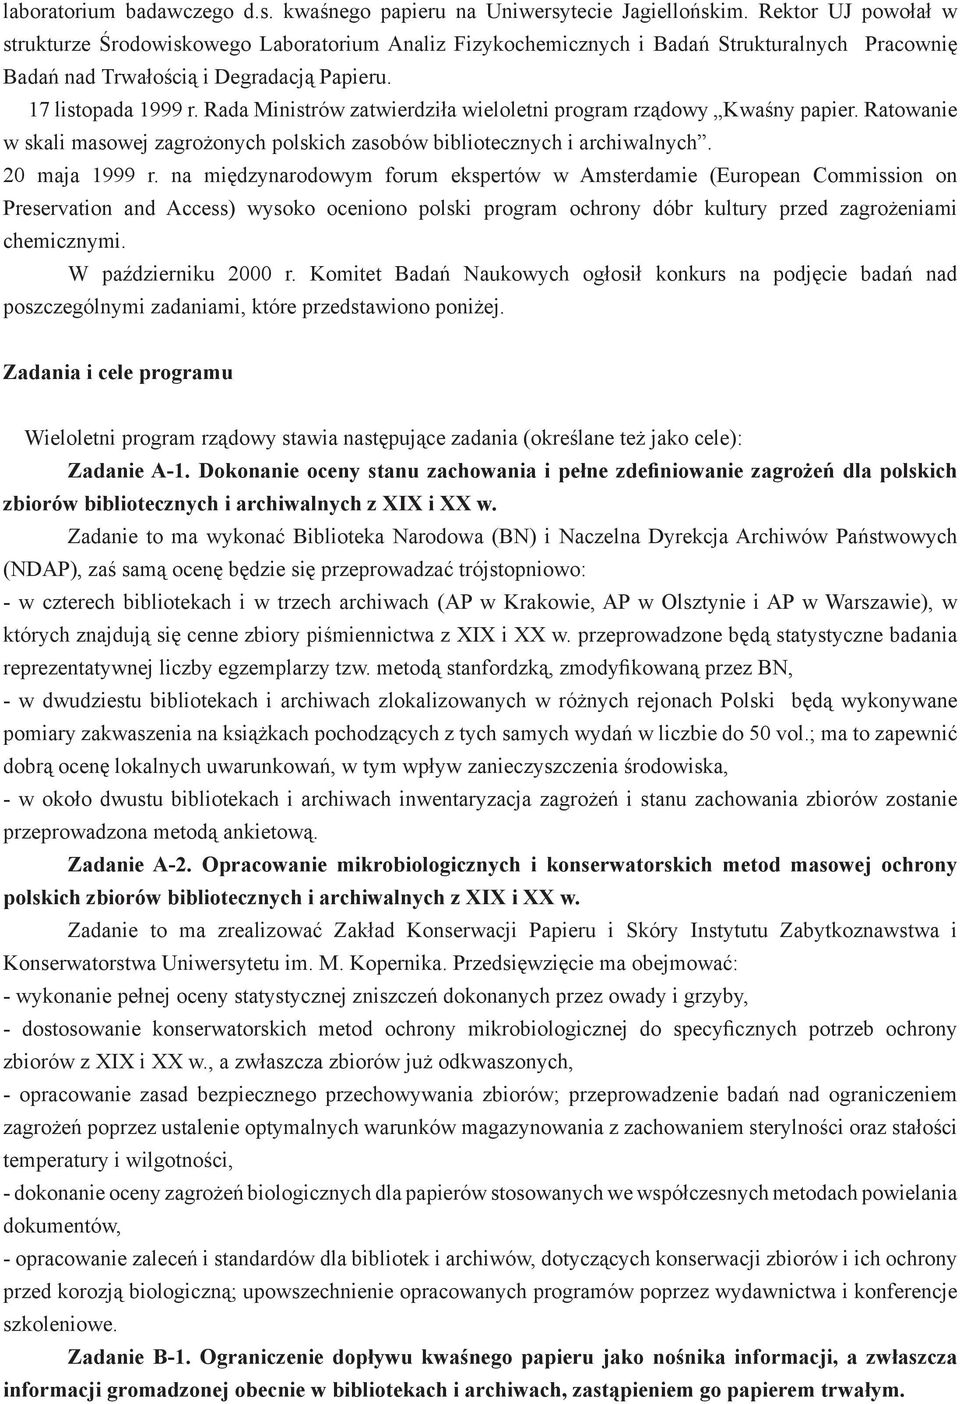 Rada Ministrów zatwierdziła wieloletni program rządowy Kwaśny papier. Ratowanie w skali masowej zagrożonych polskich zasobów bibliotecznych i archiwalnych. 20 maja 1999 r.